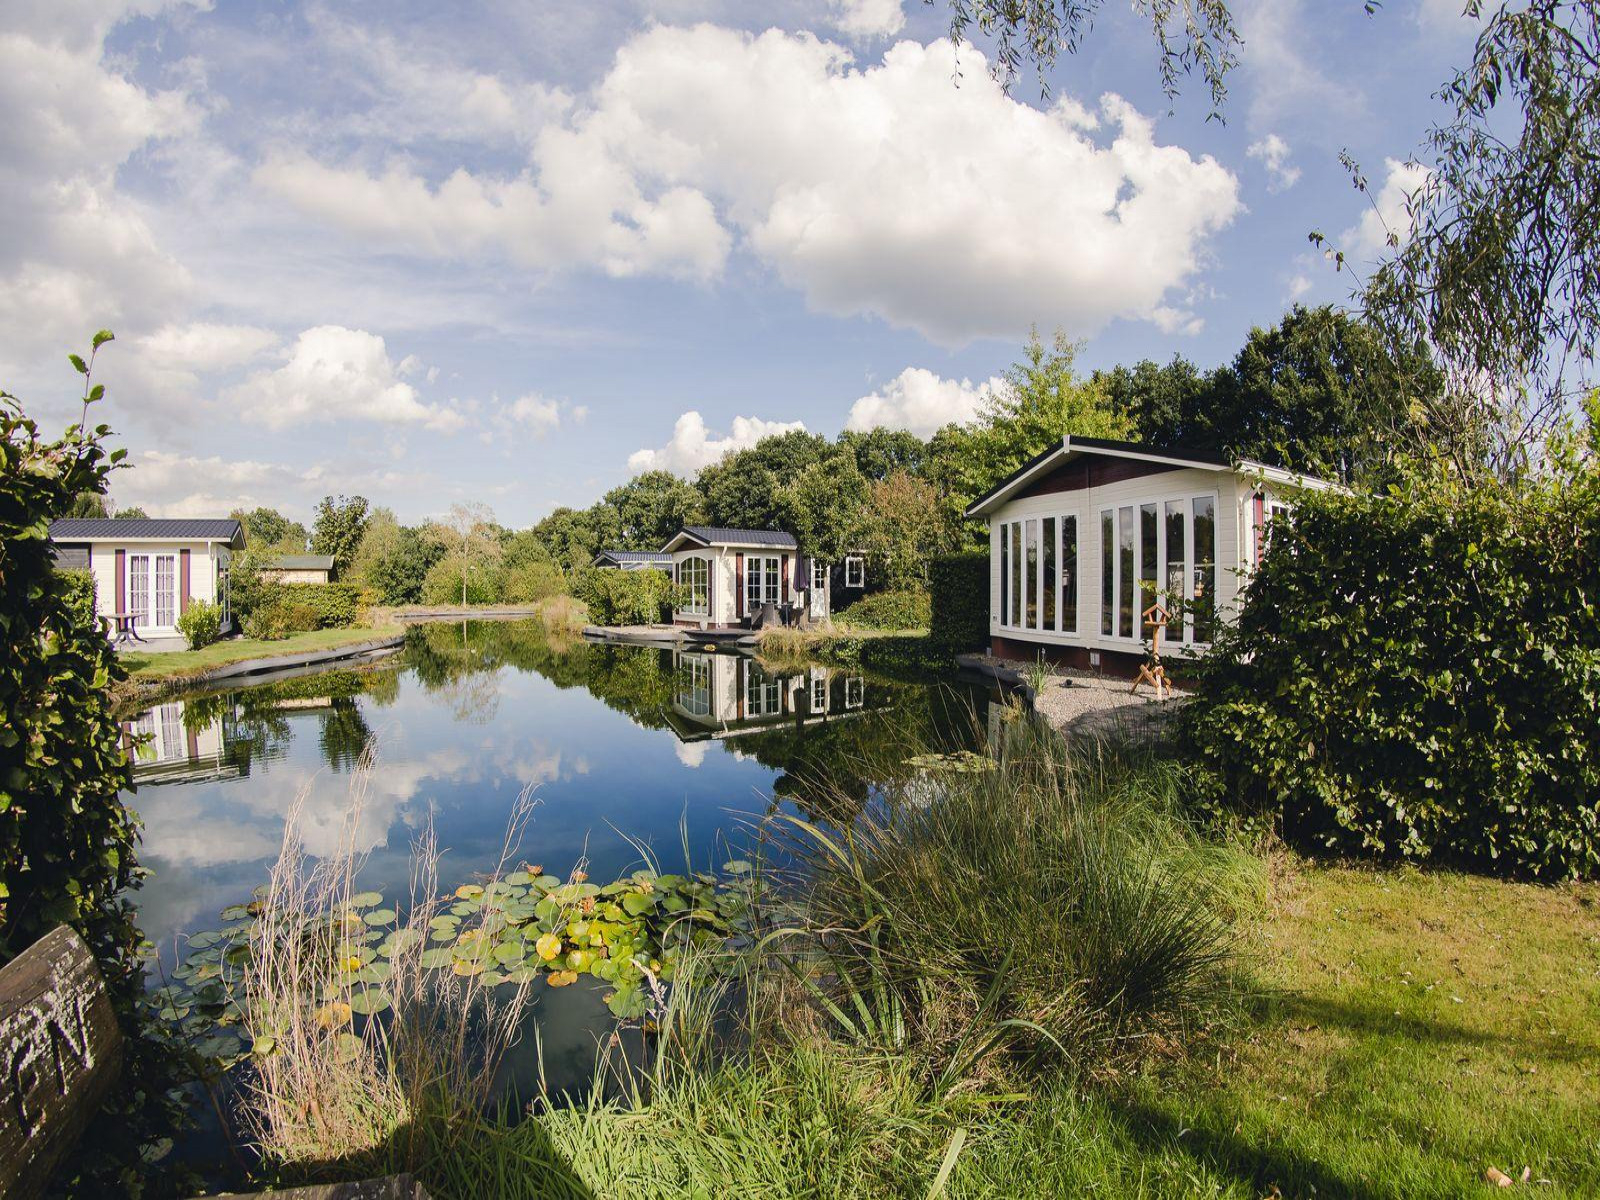 Mooie 4 persoons bungalow op een rustig vakantiepark in Rijssen, Overijssel.